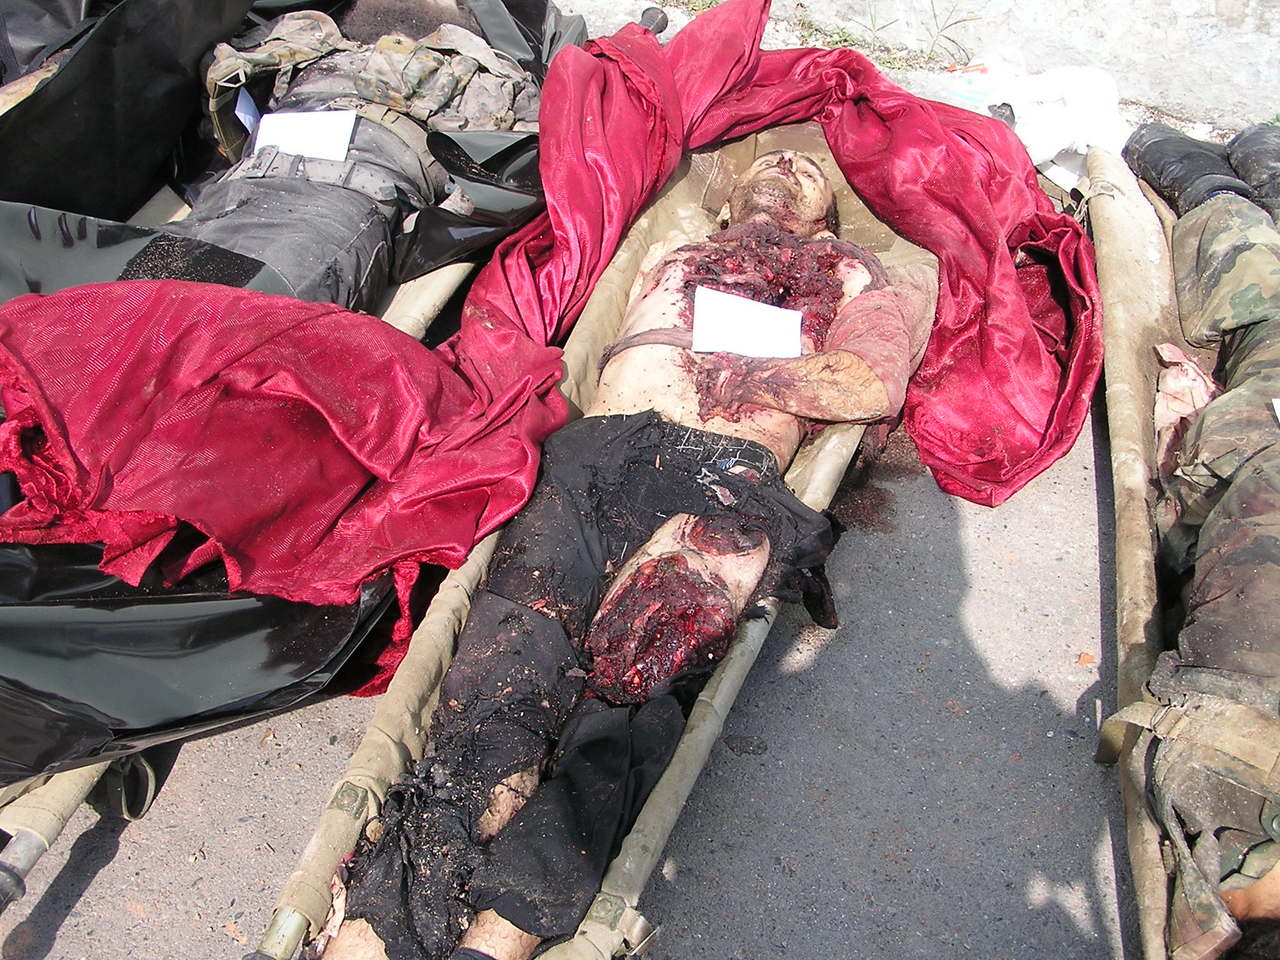 Beslan. The corpse of a terrorist on identification